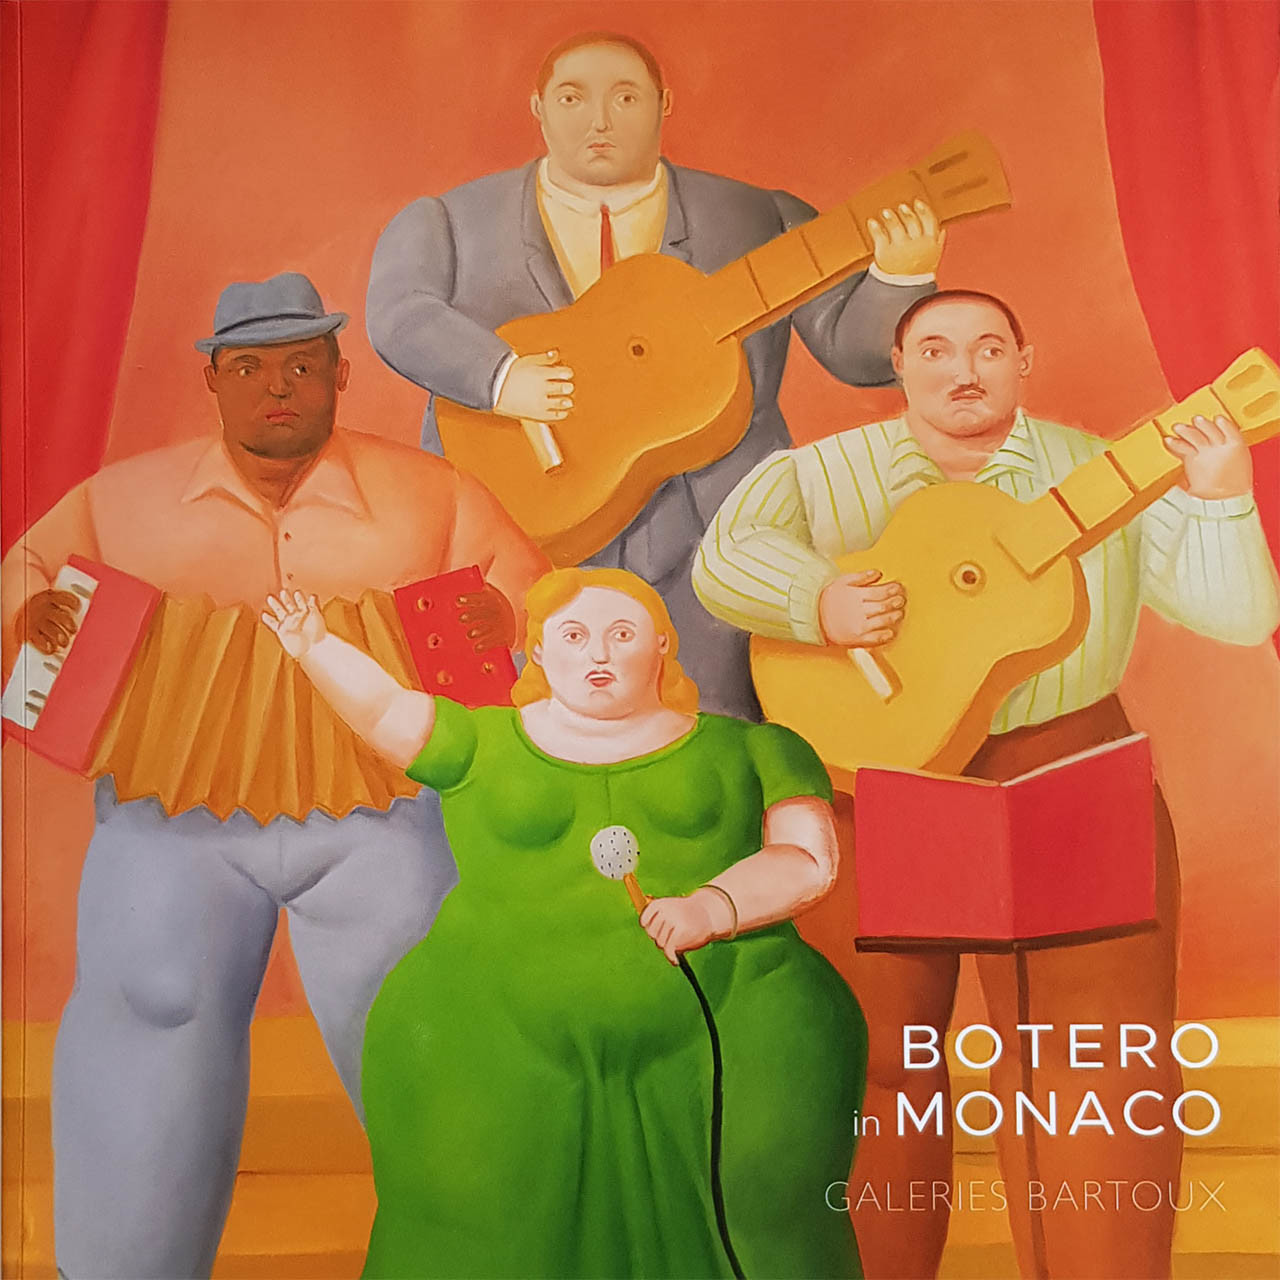 Botero in Monaco